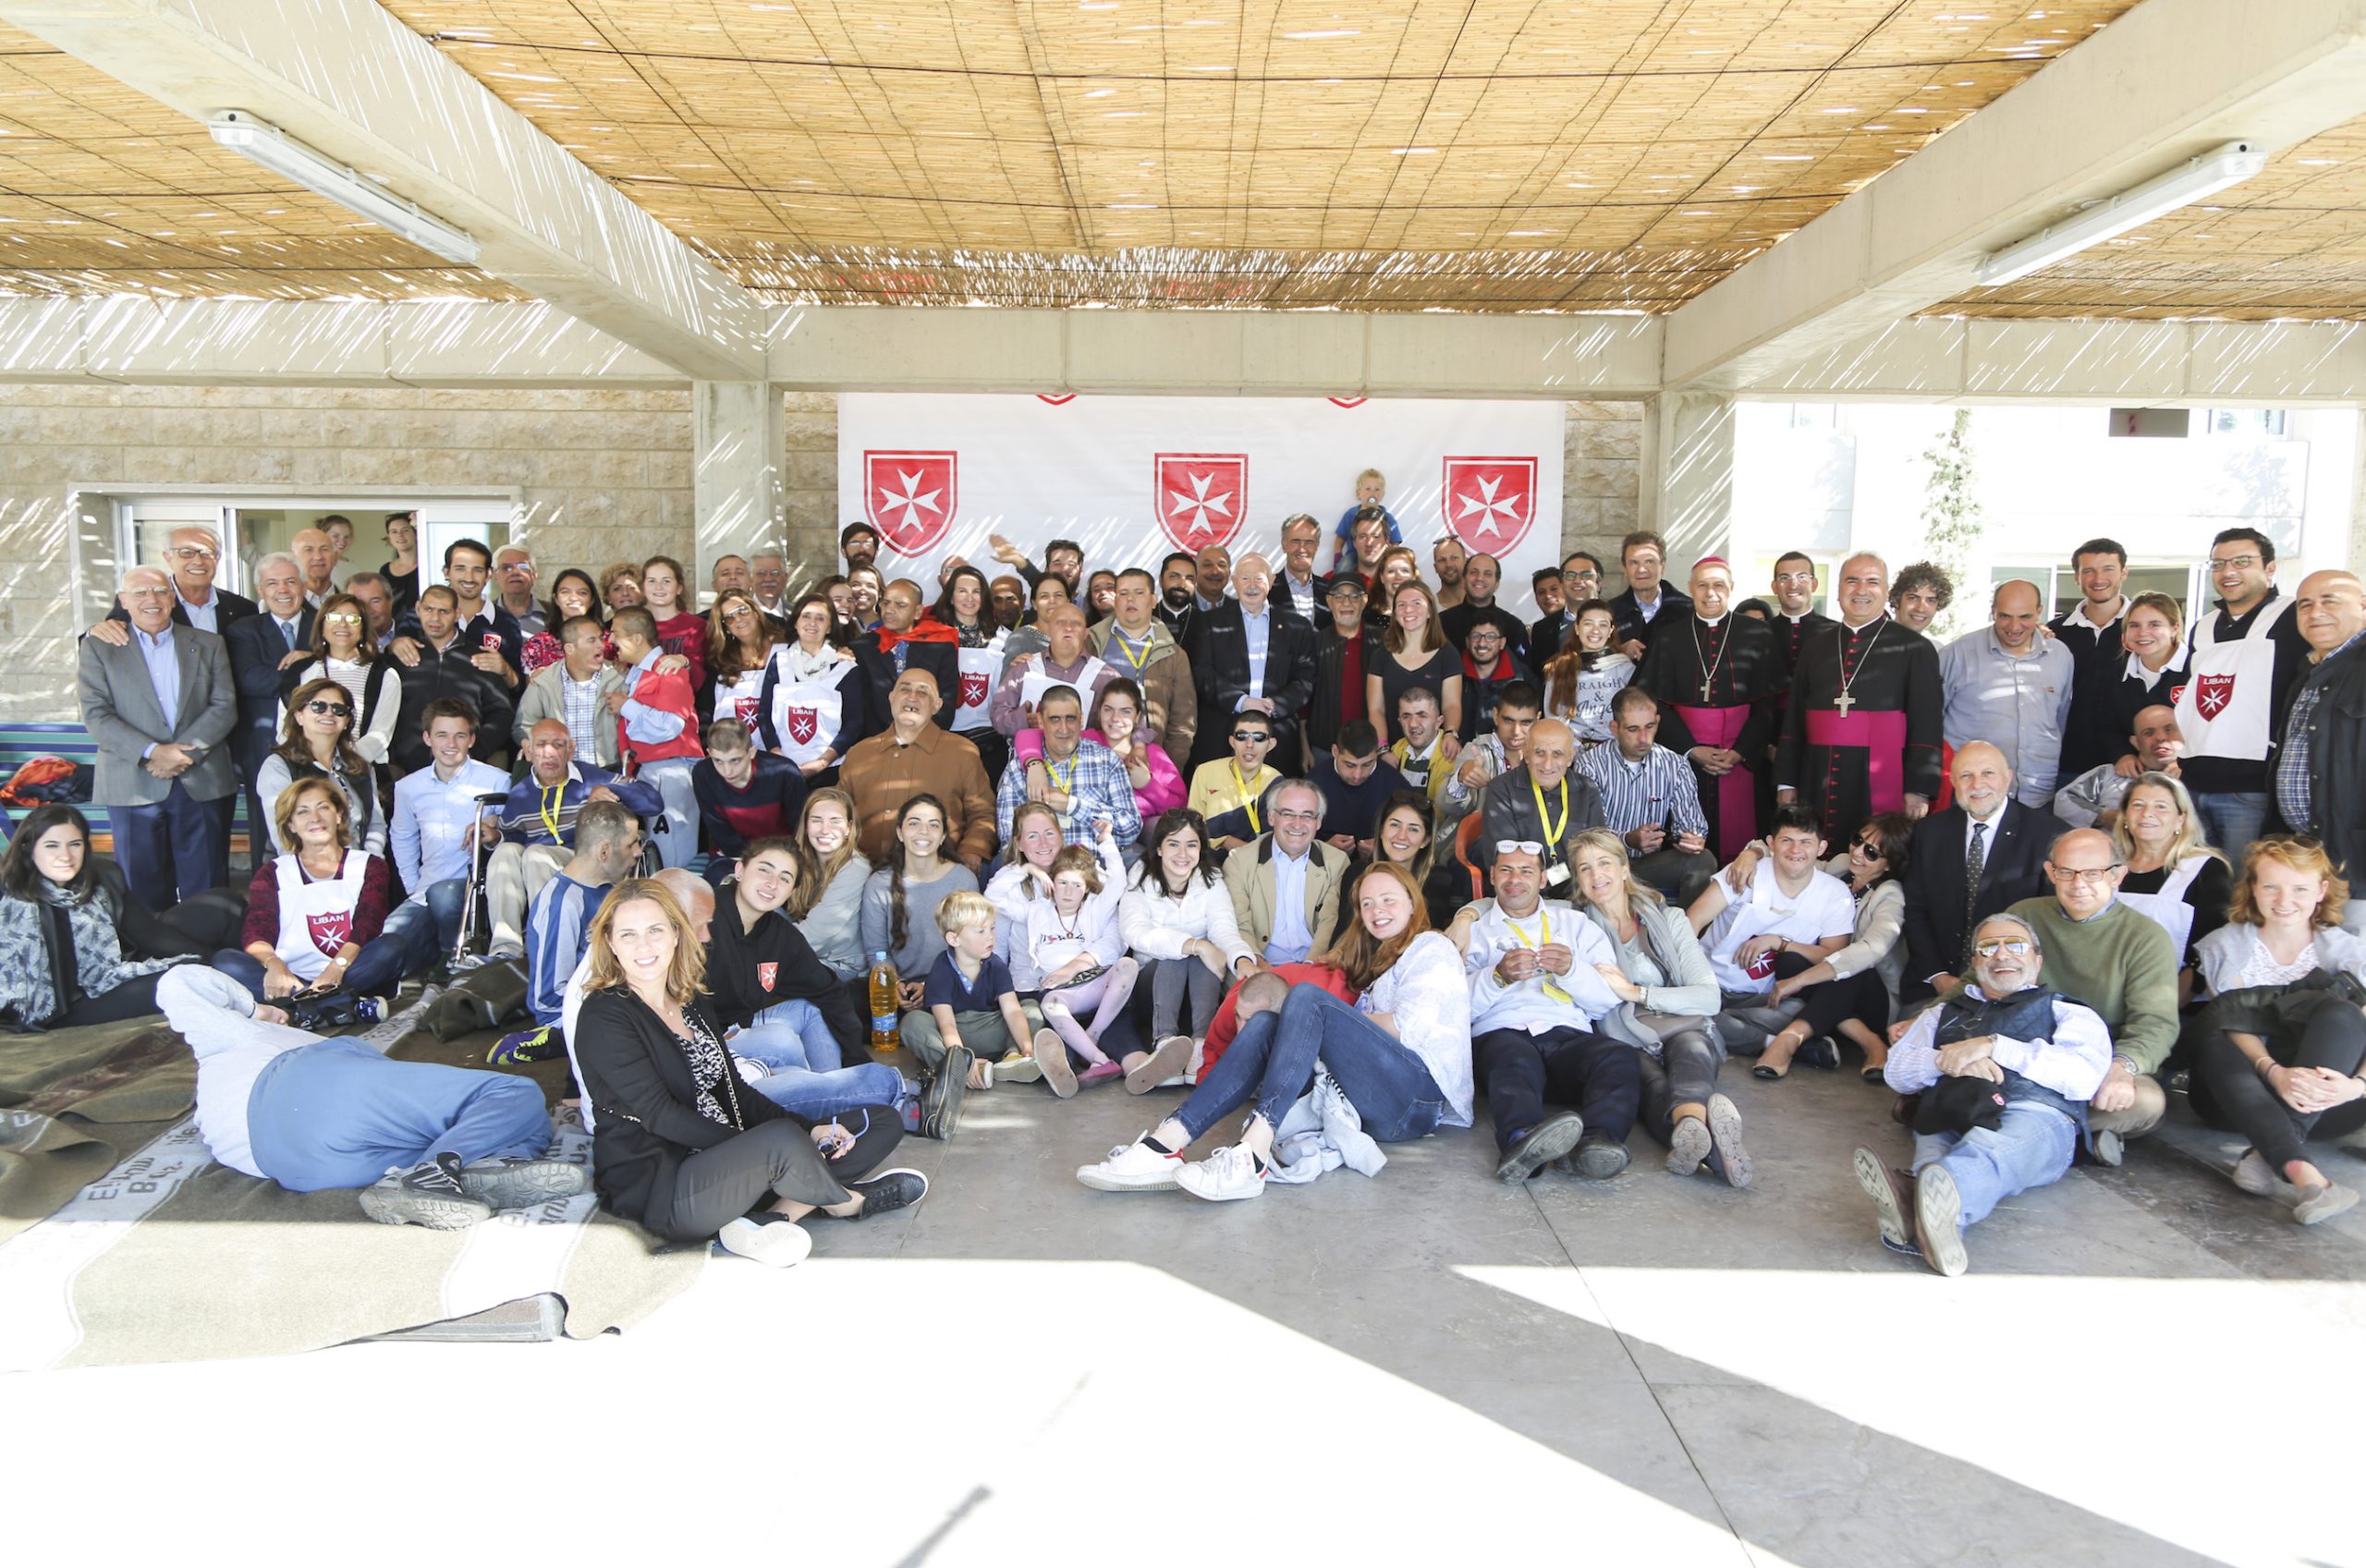 Chabrouh Camp für Menschen mit Behinderung im Libanon